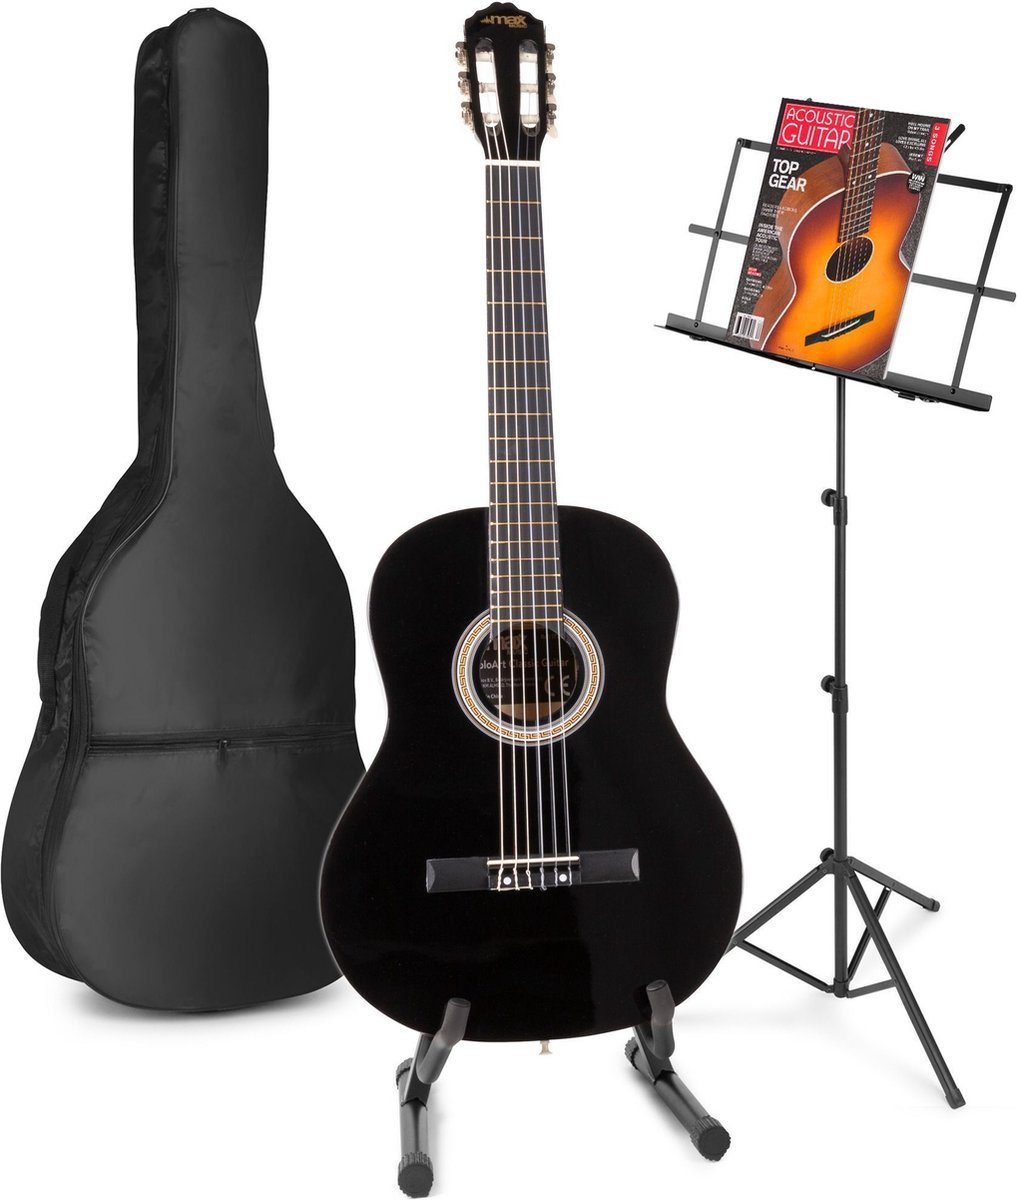 Akoestische gitaar voor beginners - MAX SoloArt klassieke gitaar / Spaanse gitaar met o.a. 39'' gitaar, gitaar standaard, muziekstandaard, gitaartas, gitaar stemapparaat en extra accessoires - Zwart